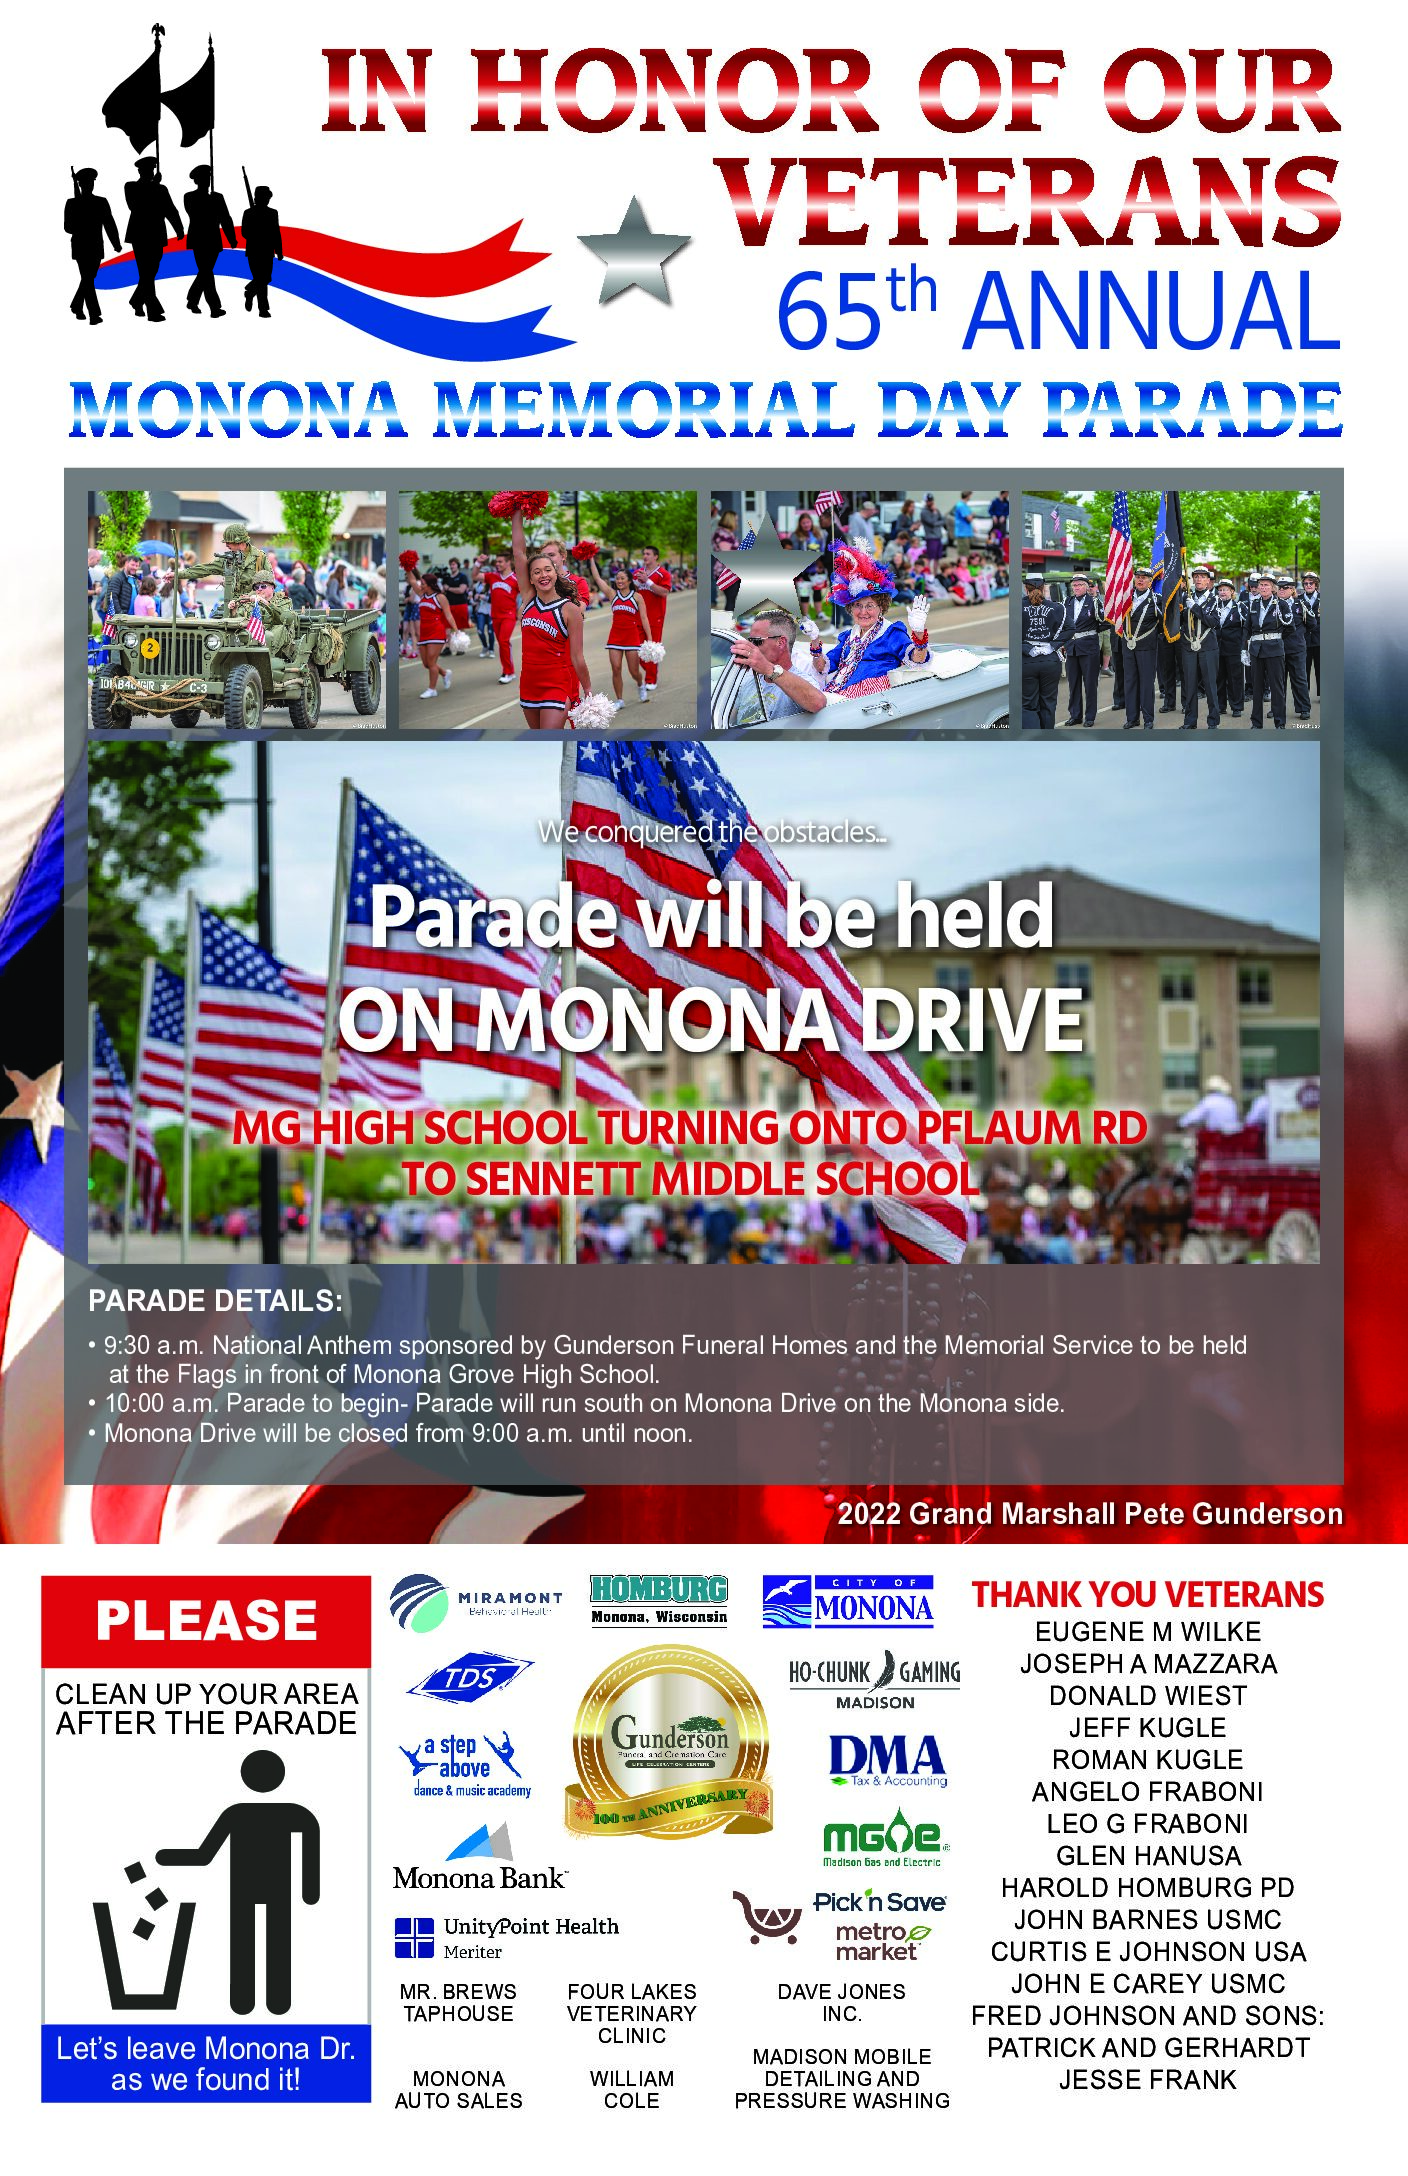 Monona Memorial Day Parade is Back! Discover Monona